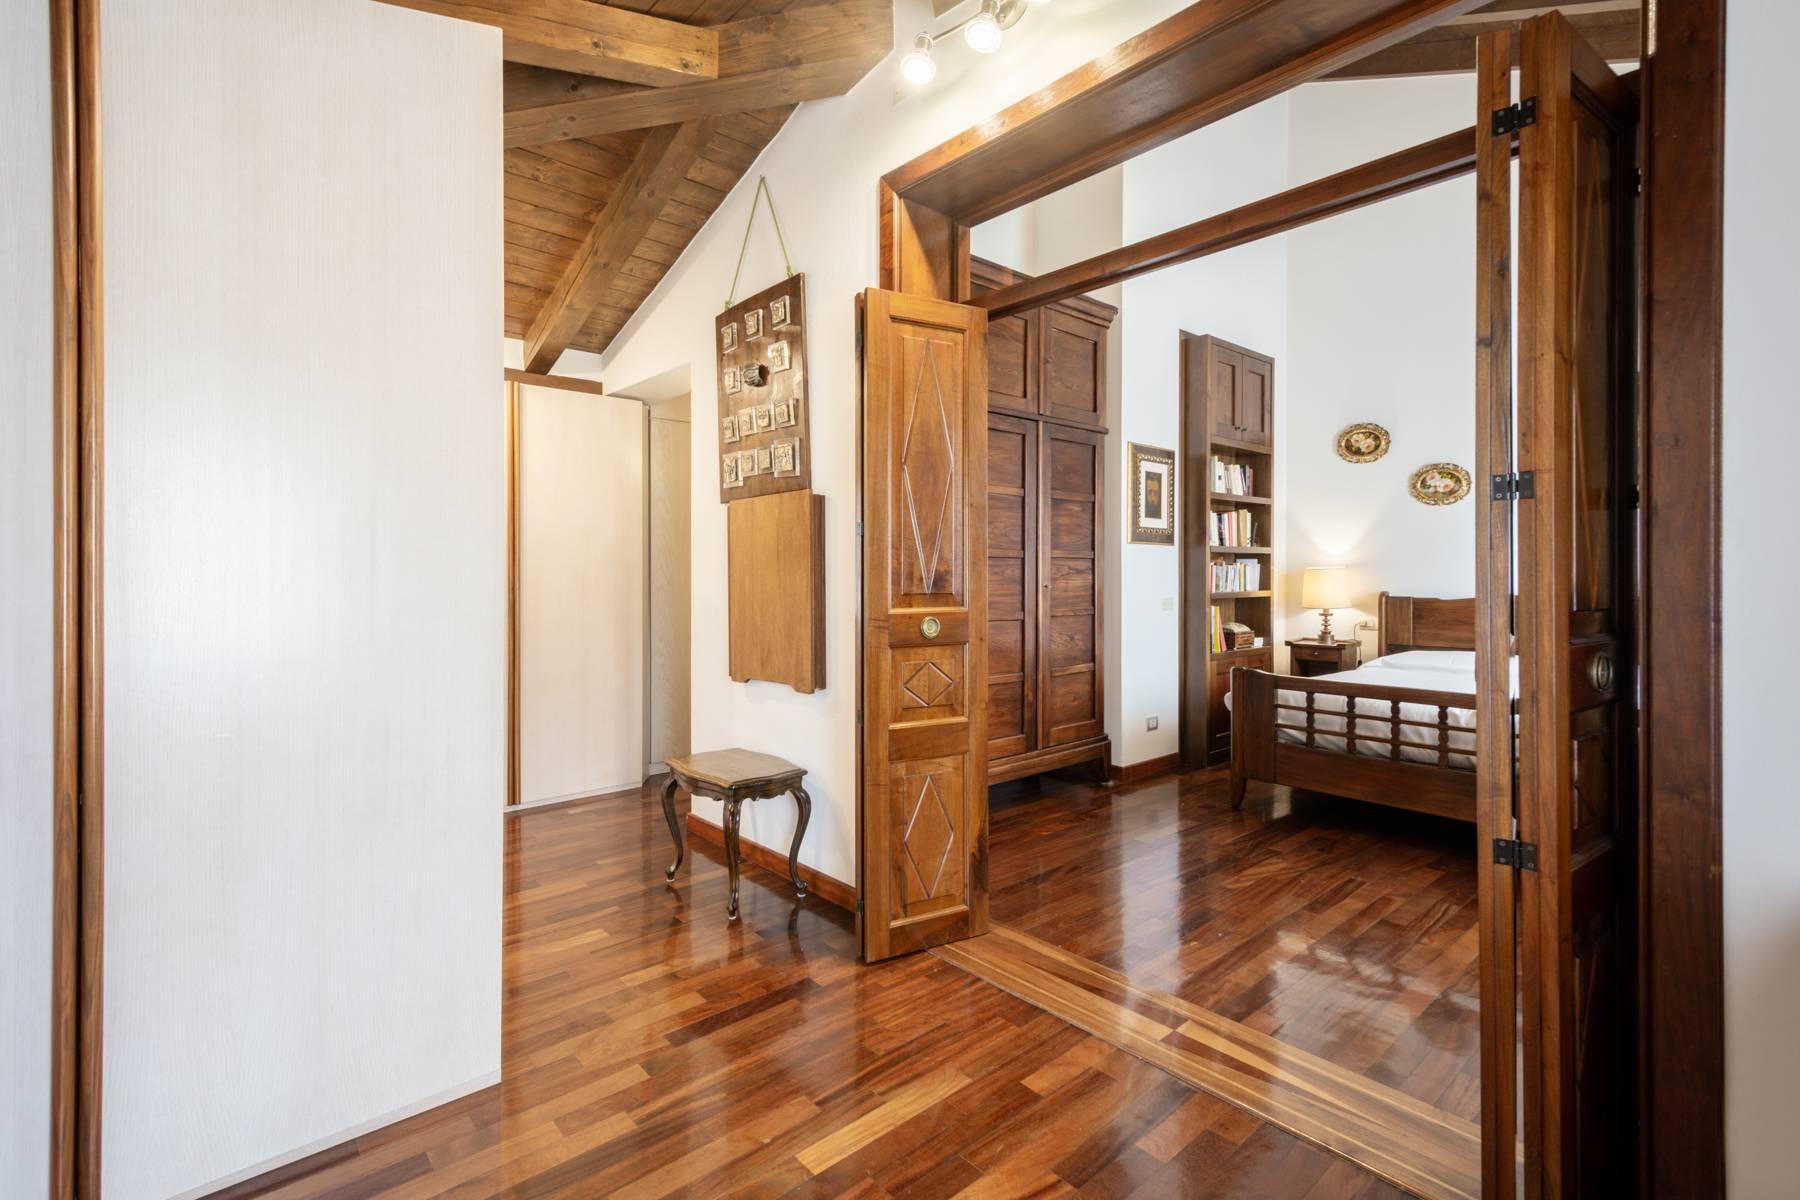 Splendido attico in Villa stile Liberty a pochi minuti dal centro storico di Verona - 20